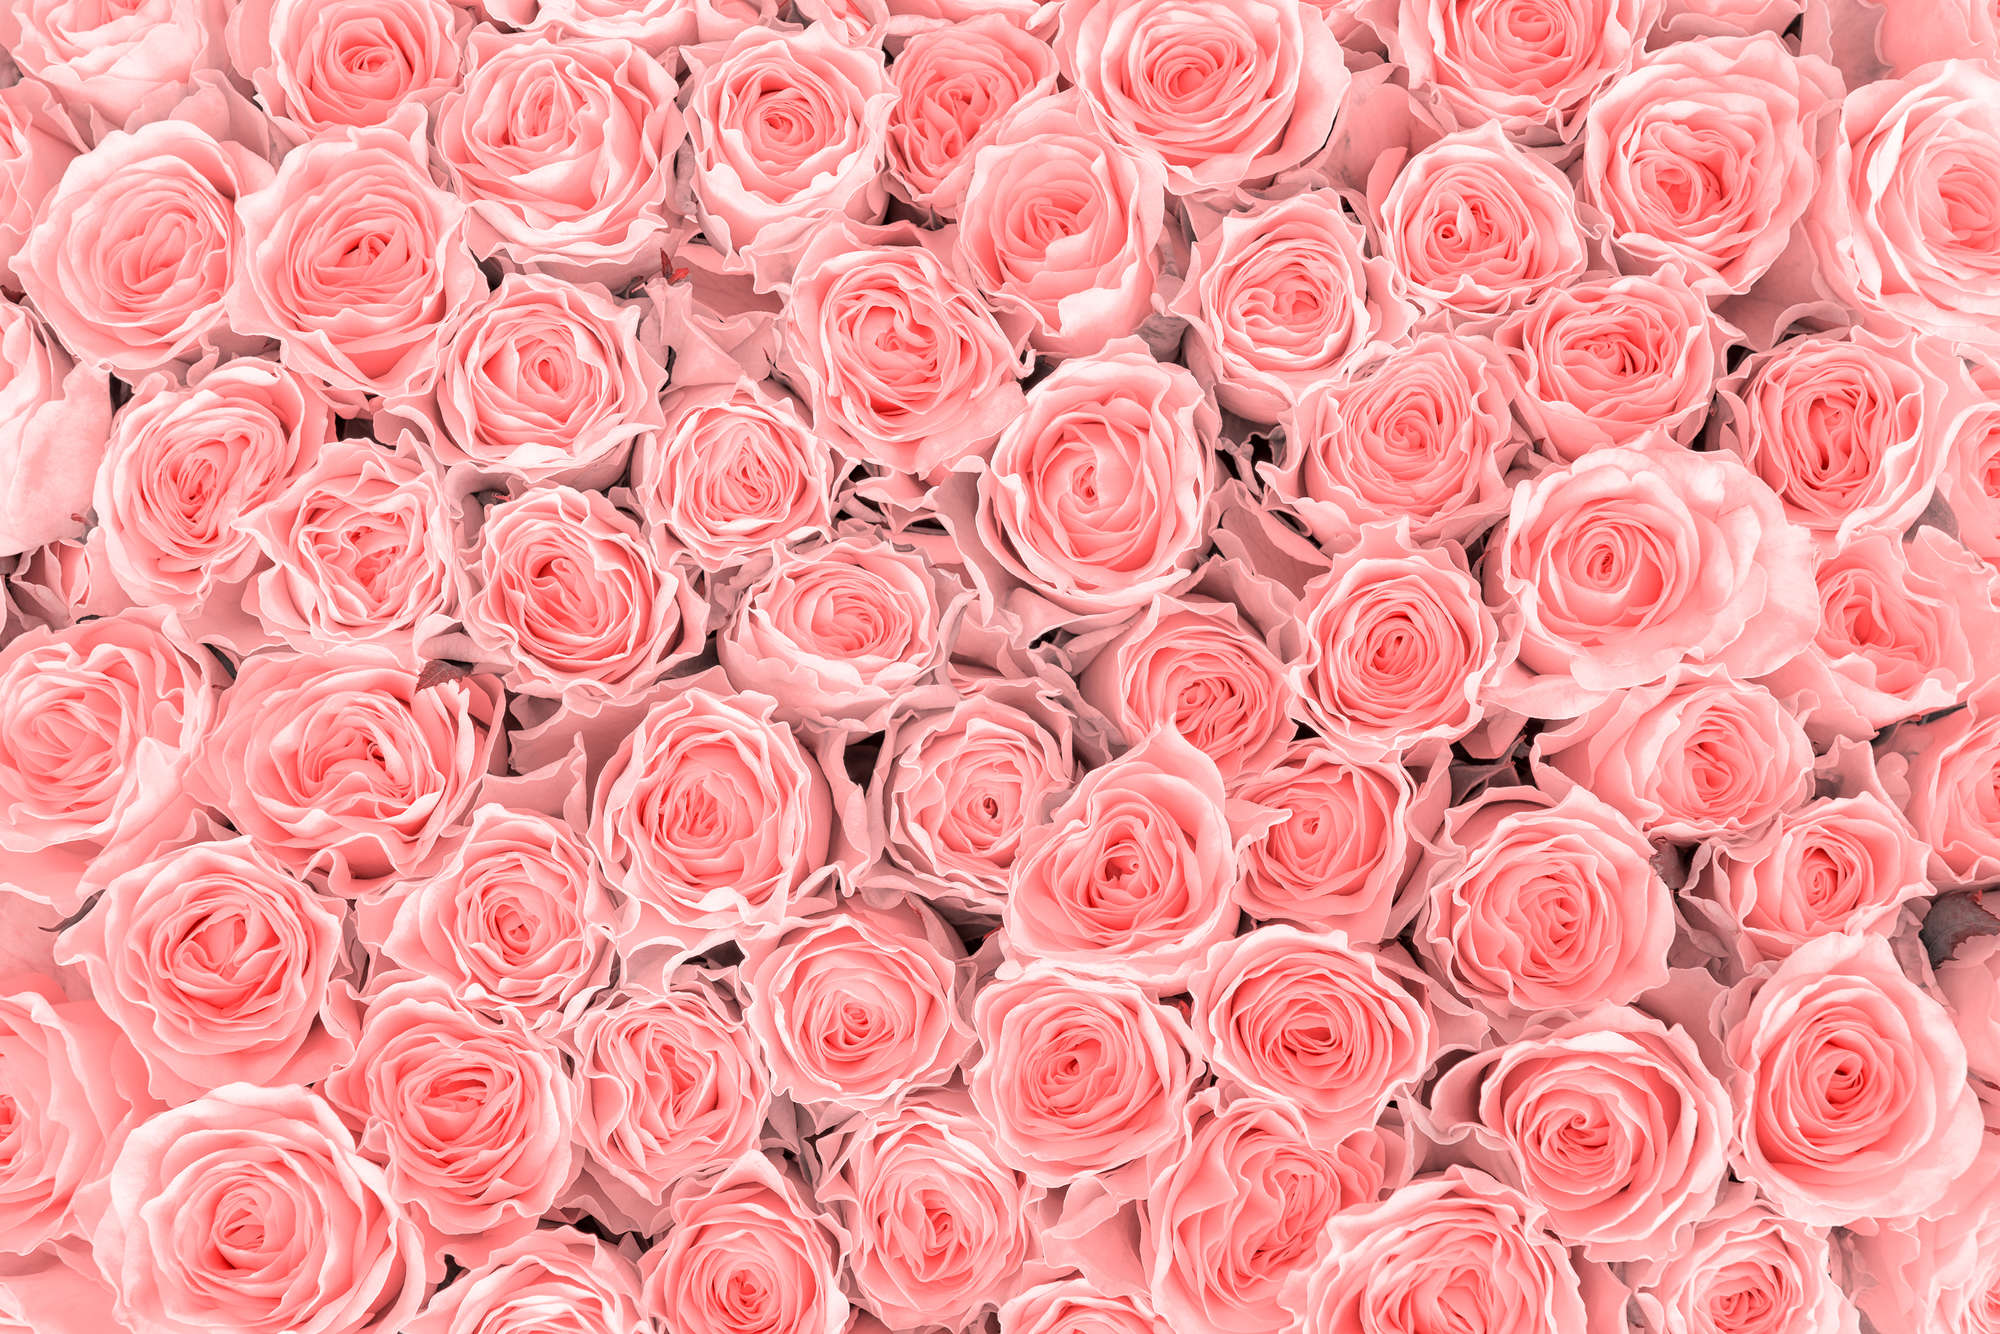             Papier peint végétal roses roses sur intissé lisse mat
        